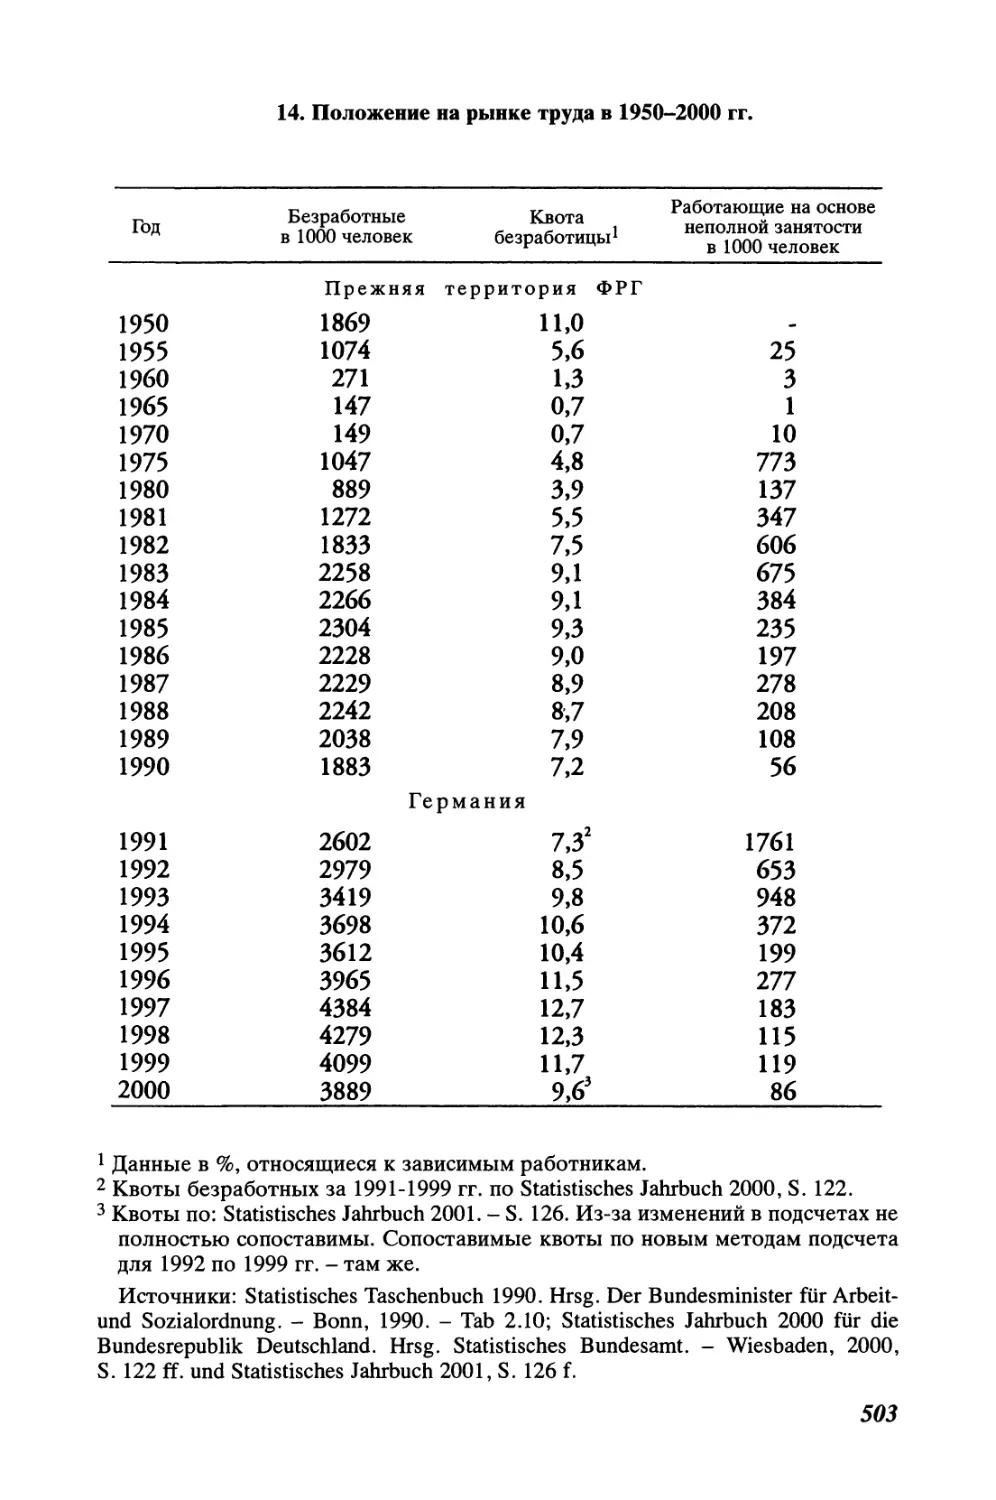 14. Положение на рынке труда в 1950-2000 гг